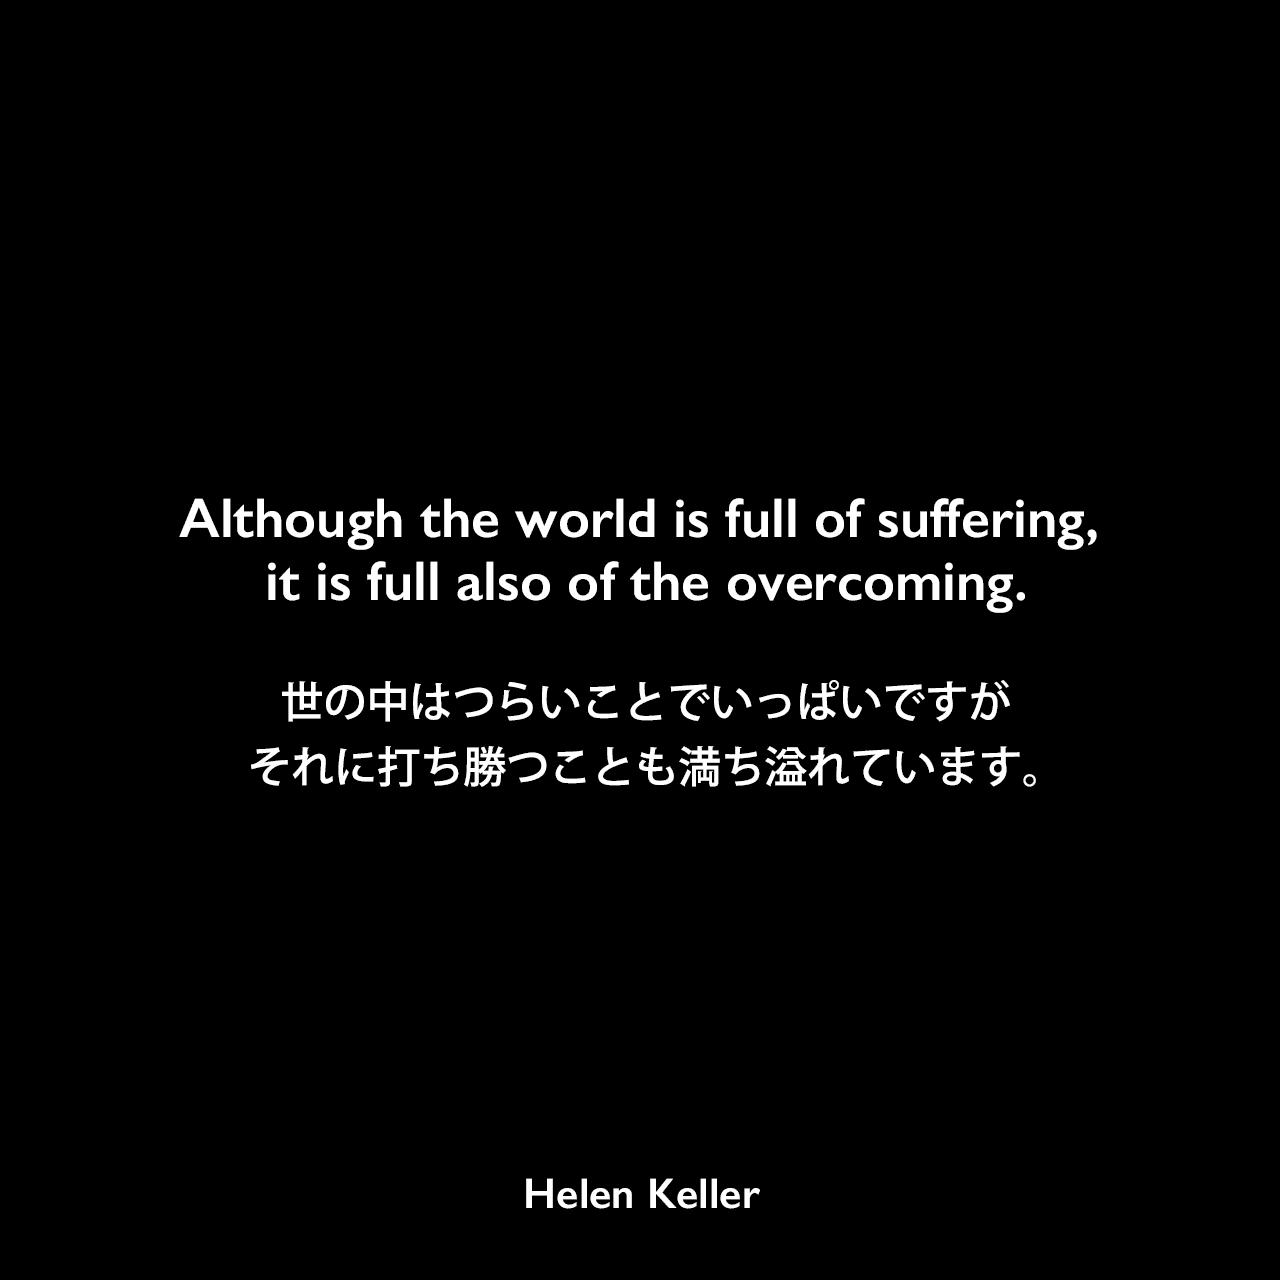 Although the world is full of suffering, it is full also of the overcoming.世の中はつらいことでいっぱいですが、それに打ち勝つことも満ち溢れています。- ヘレン・ケラーの本「楽天主義」よりHelen Keller